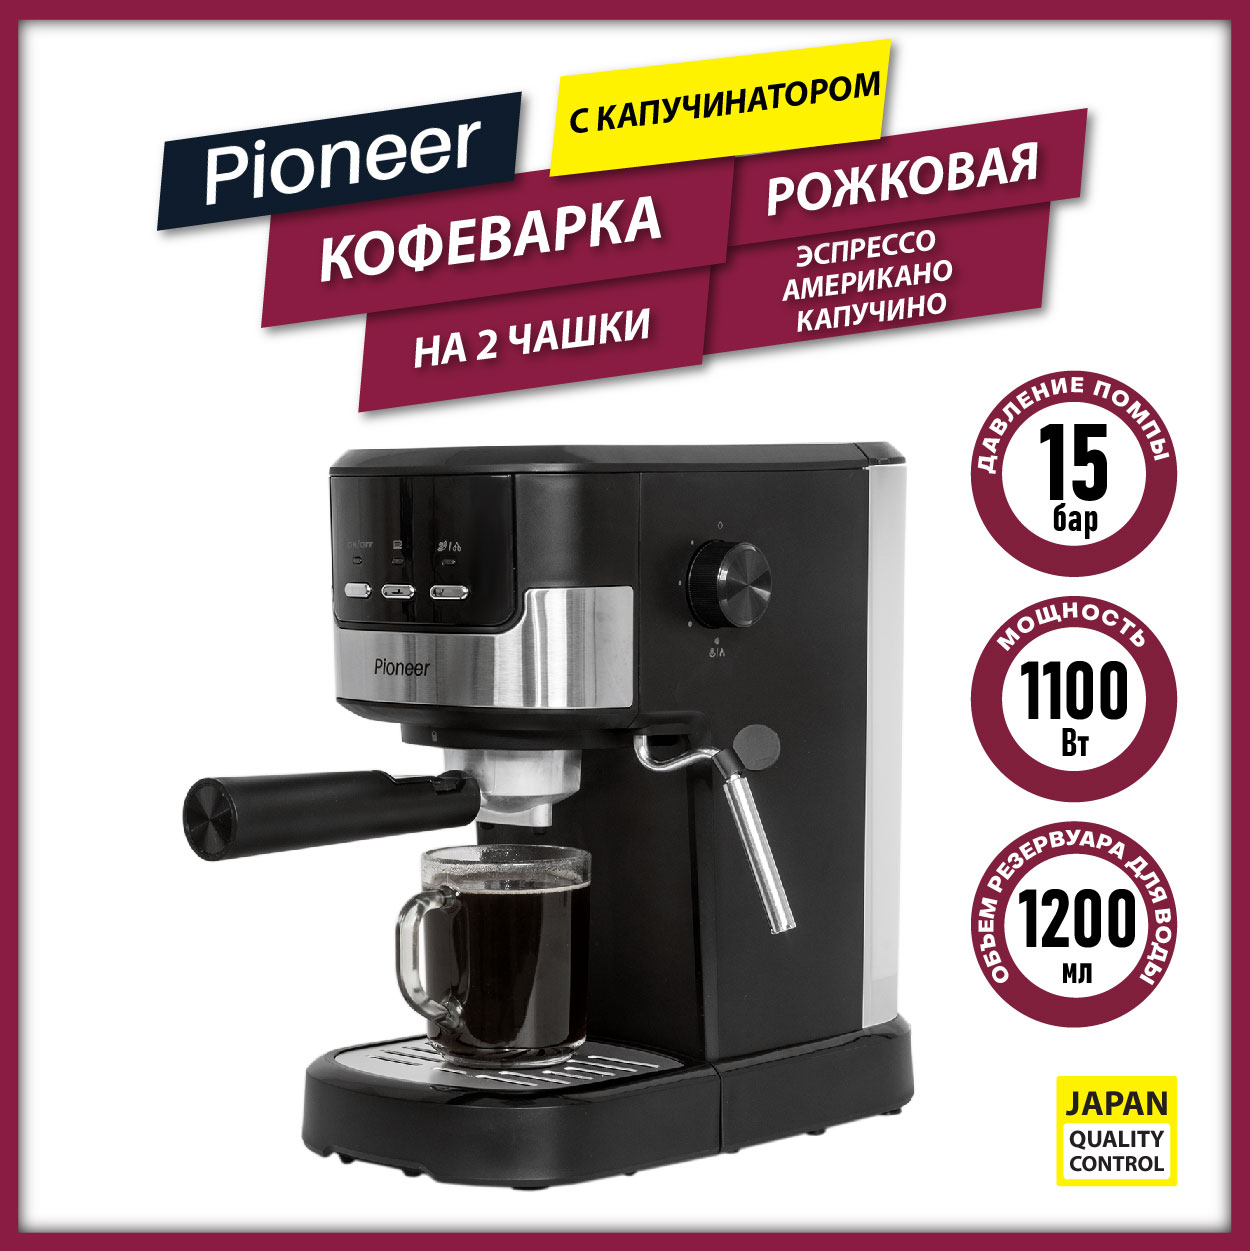 Рожковая кофеварка Pioneer CM107P